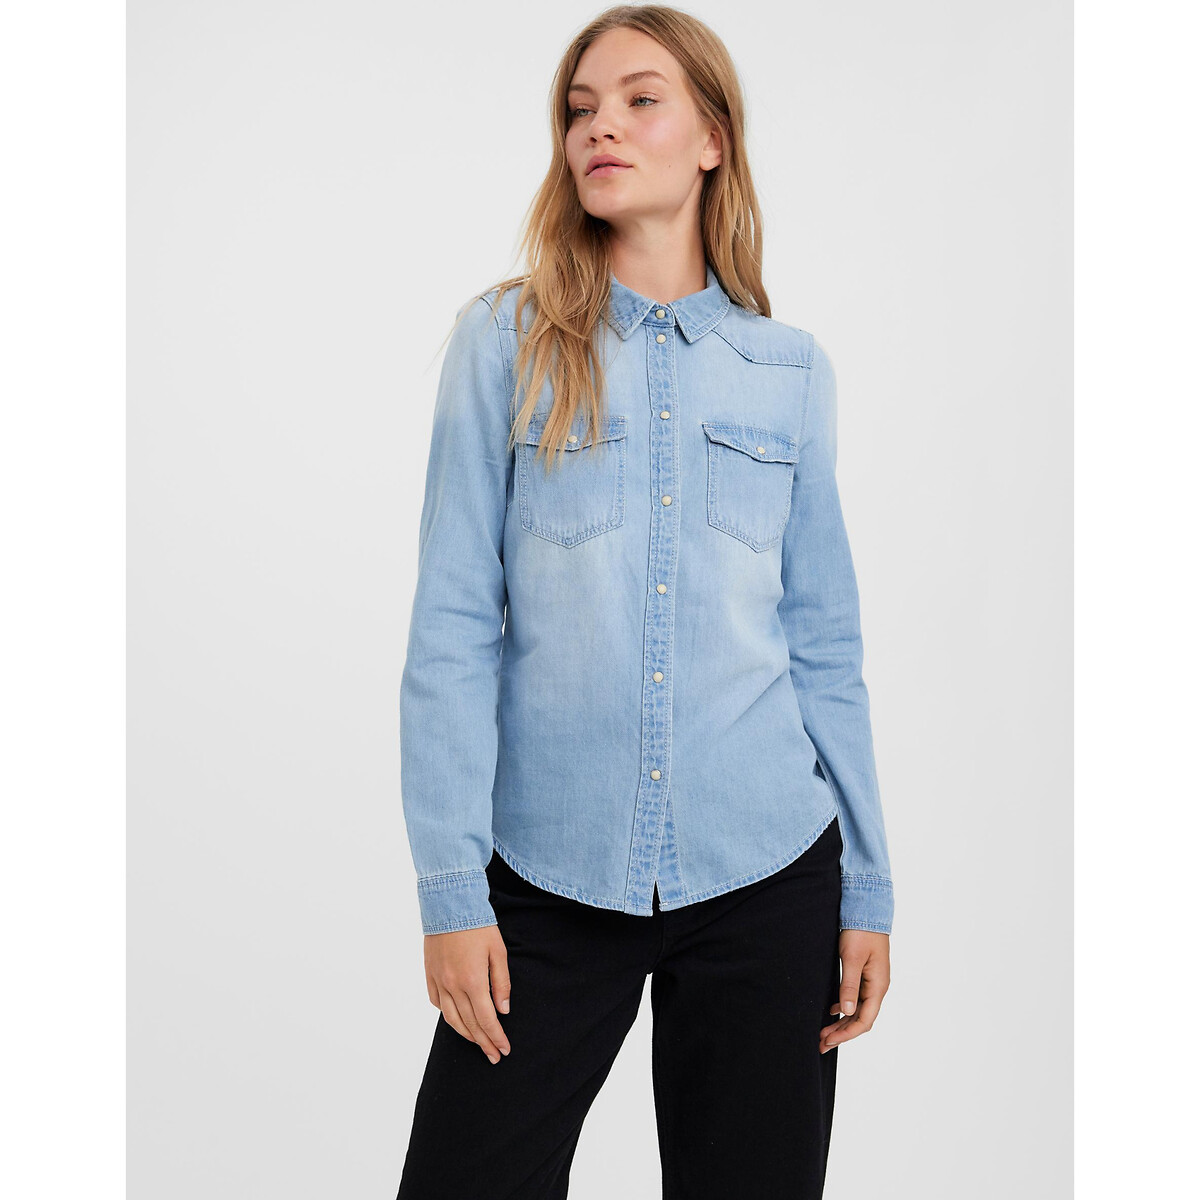 

Рубашка LaRedoute, Синий, Рубашка из джинсовой ткани XS синий